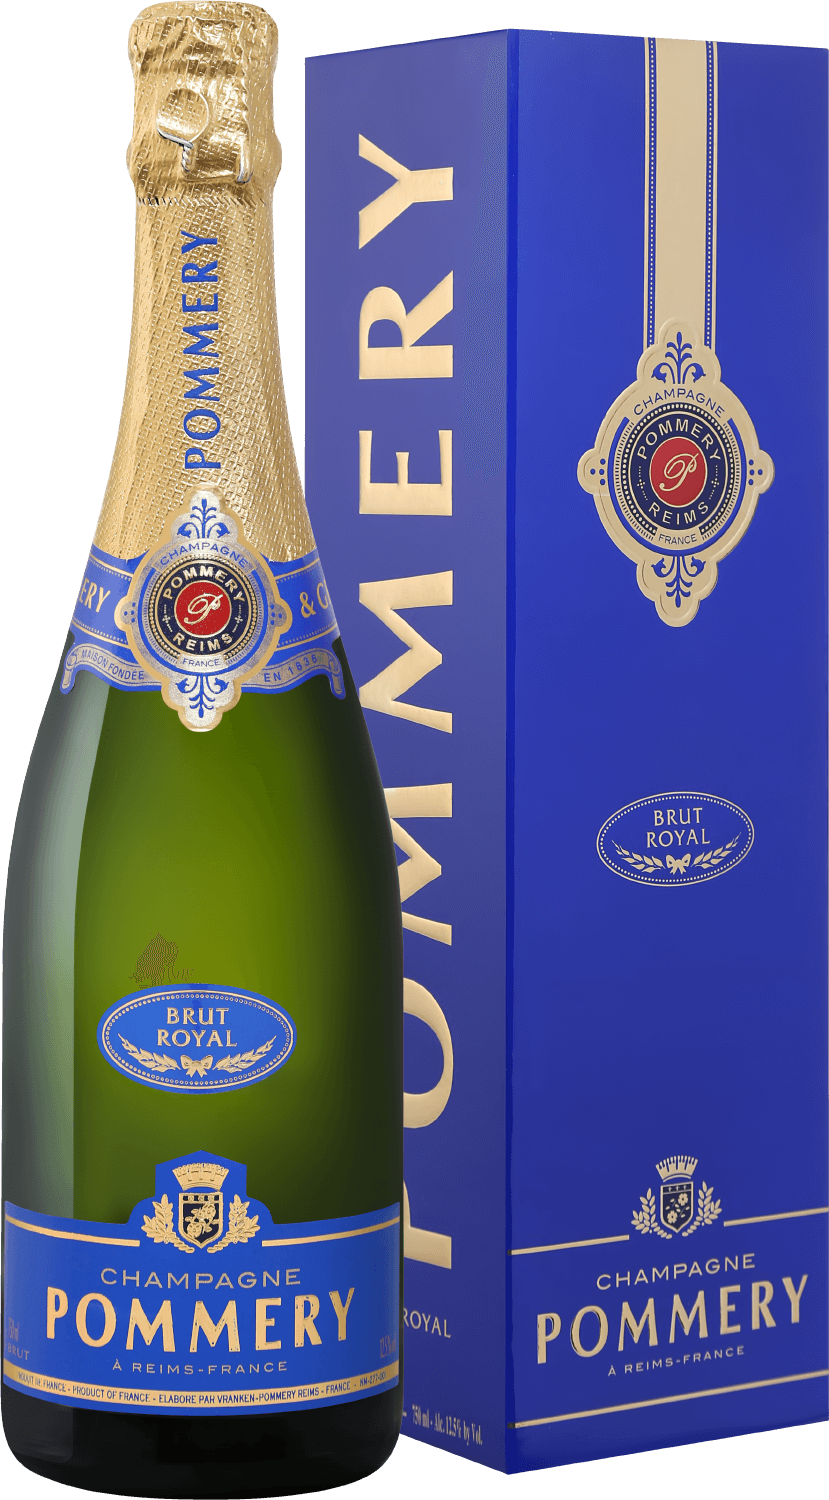 Pommery Brut Royal Champagne AOP (gift box) ultradition brut champagne aoс laherte freres gift box